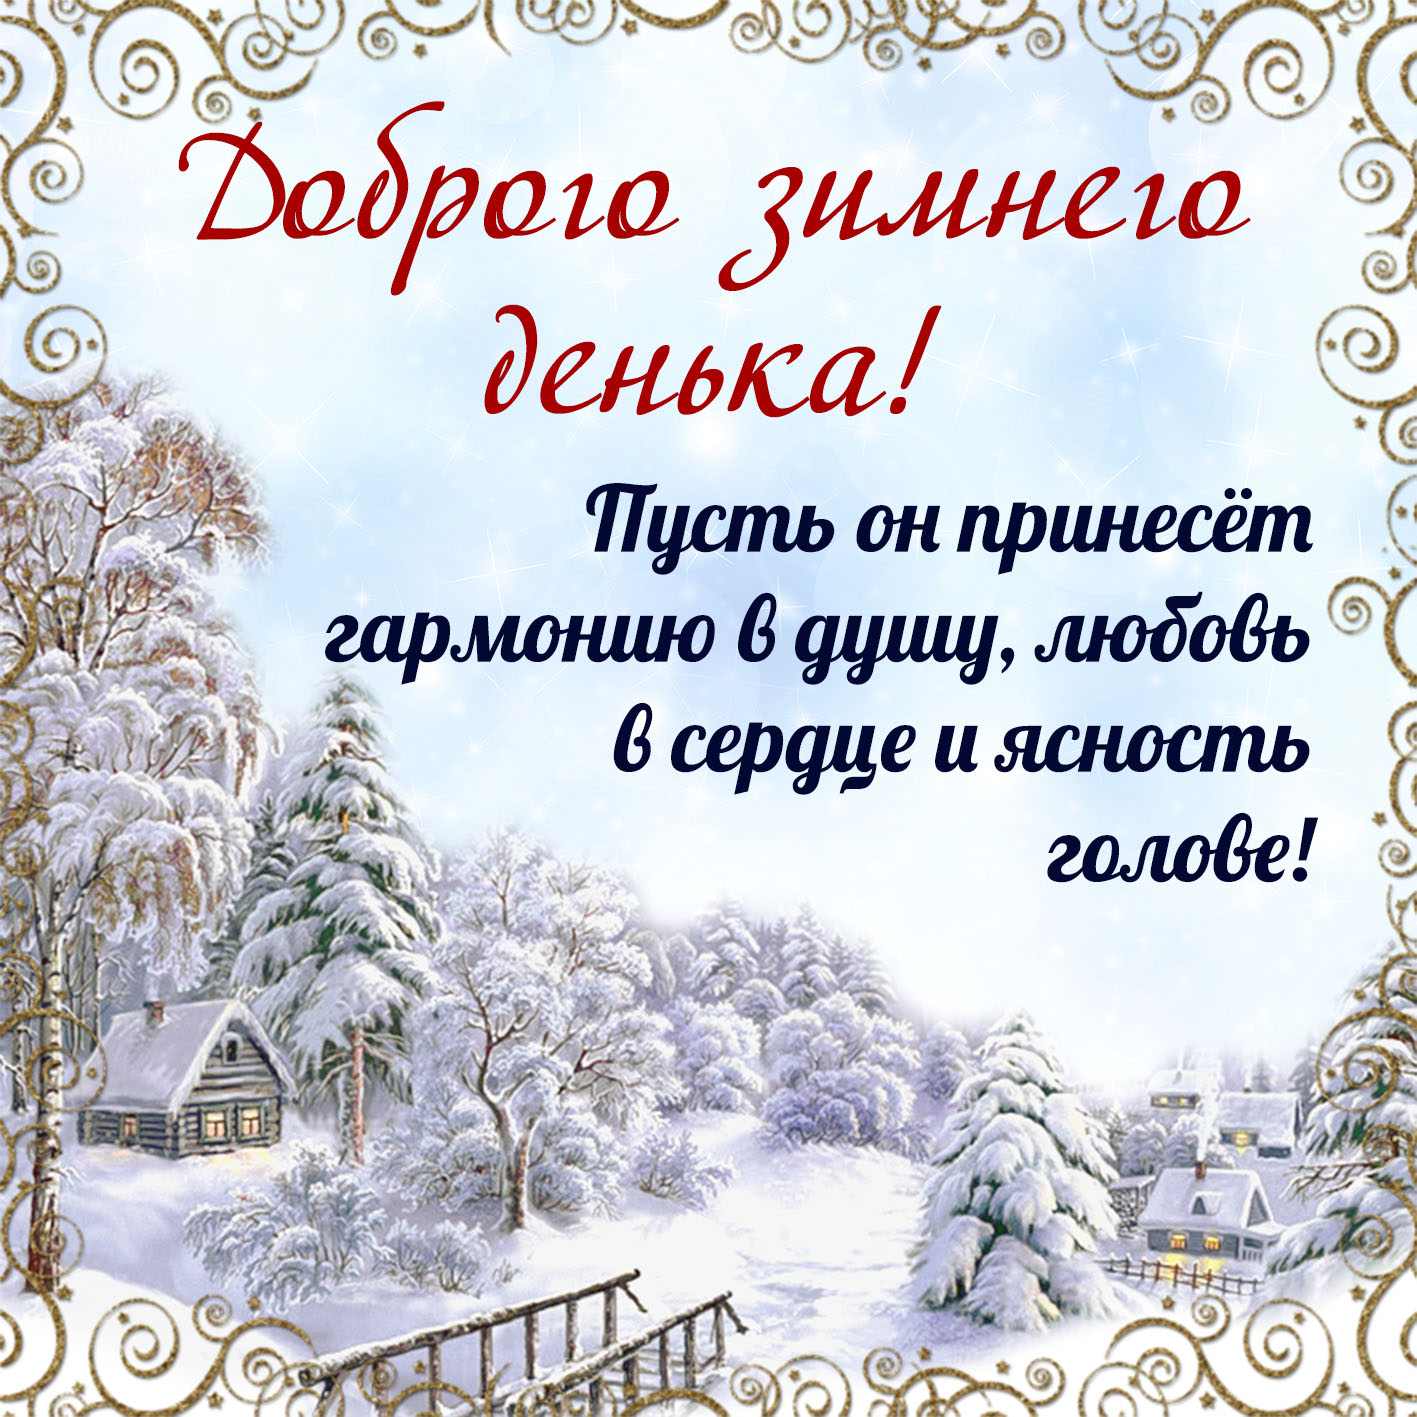 Скачать зимнюю открытку с пожеланиями Доброго зимнего денька!